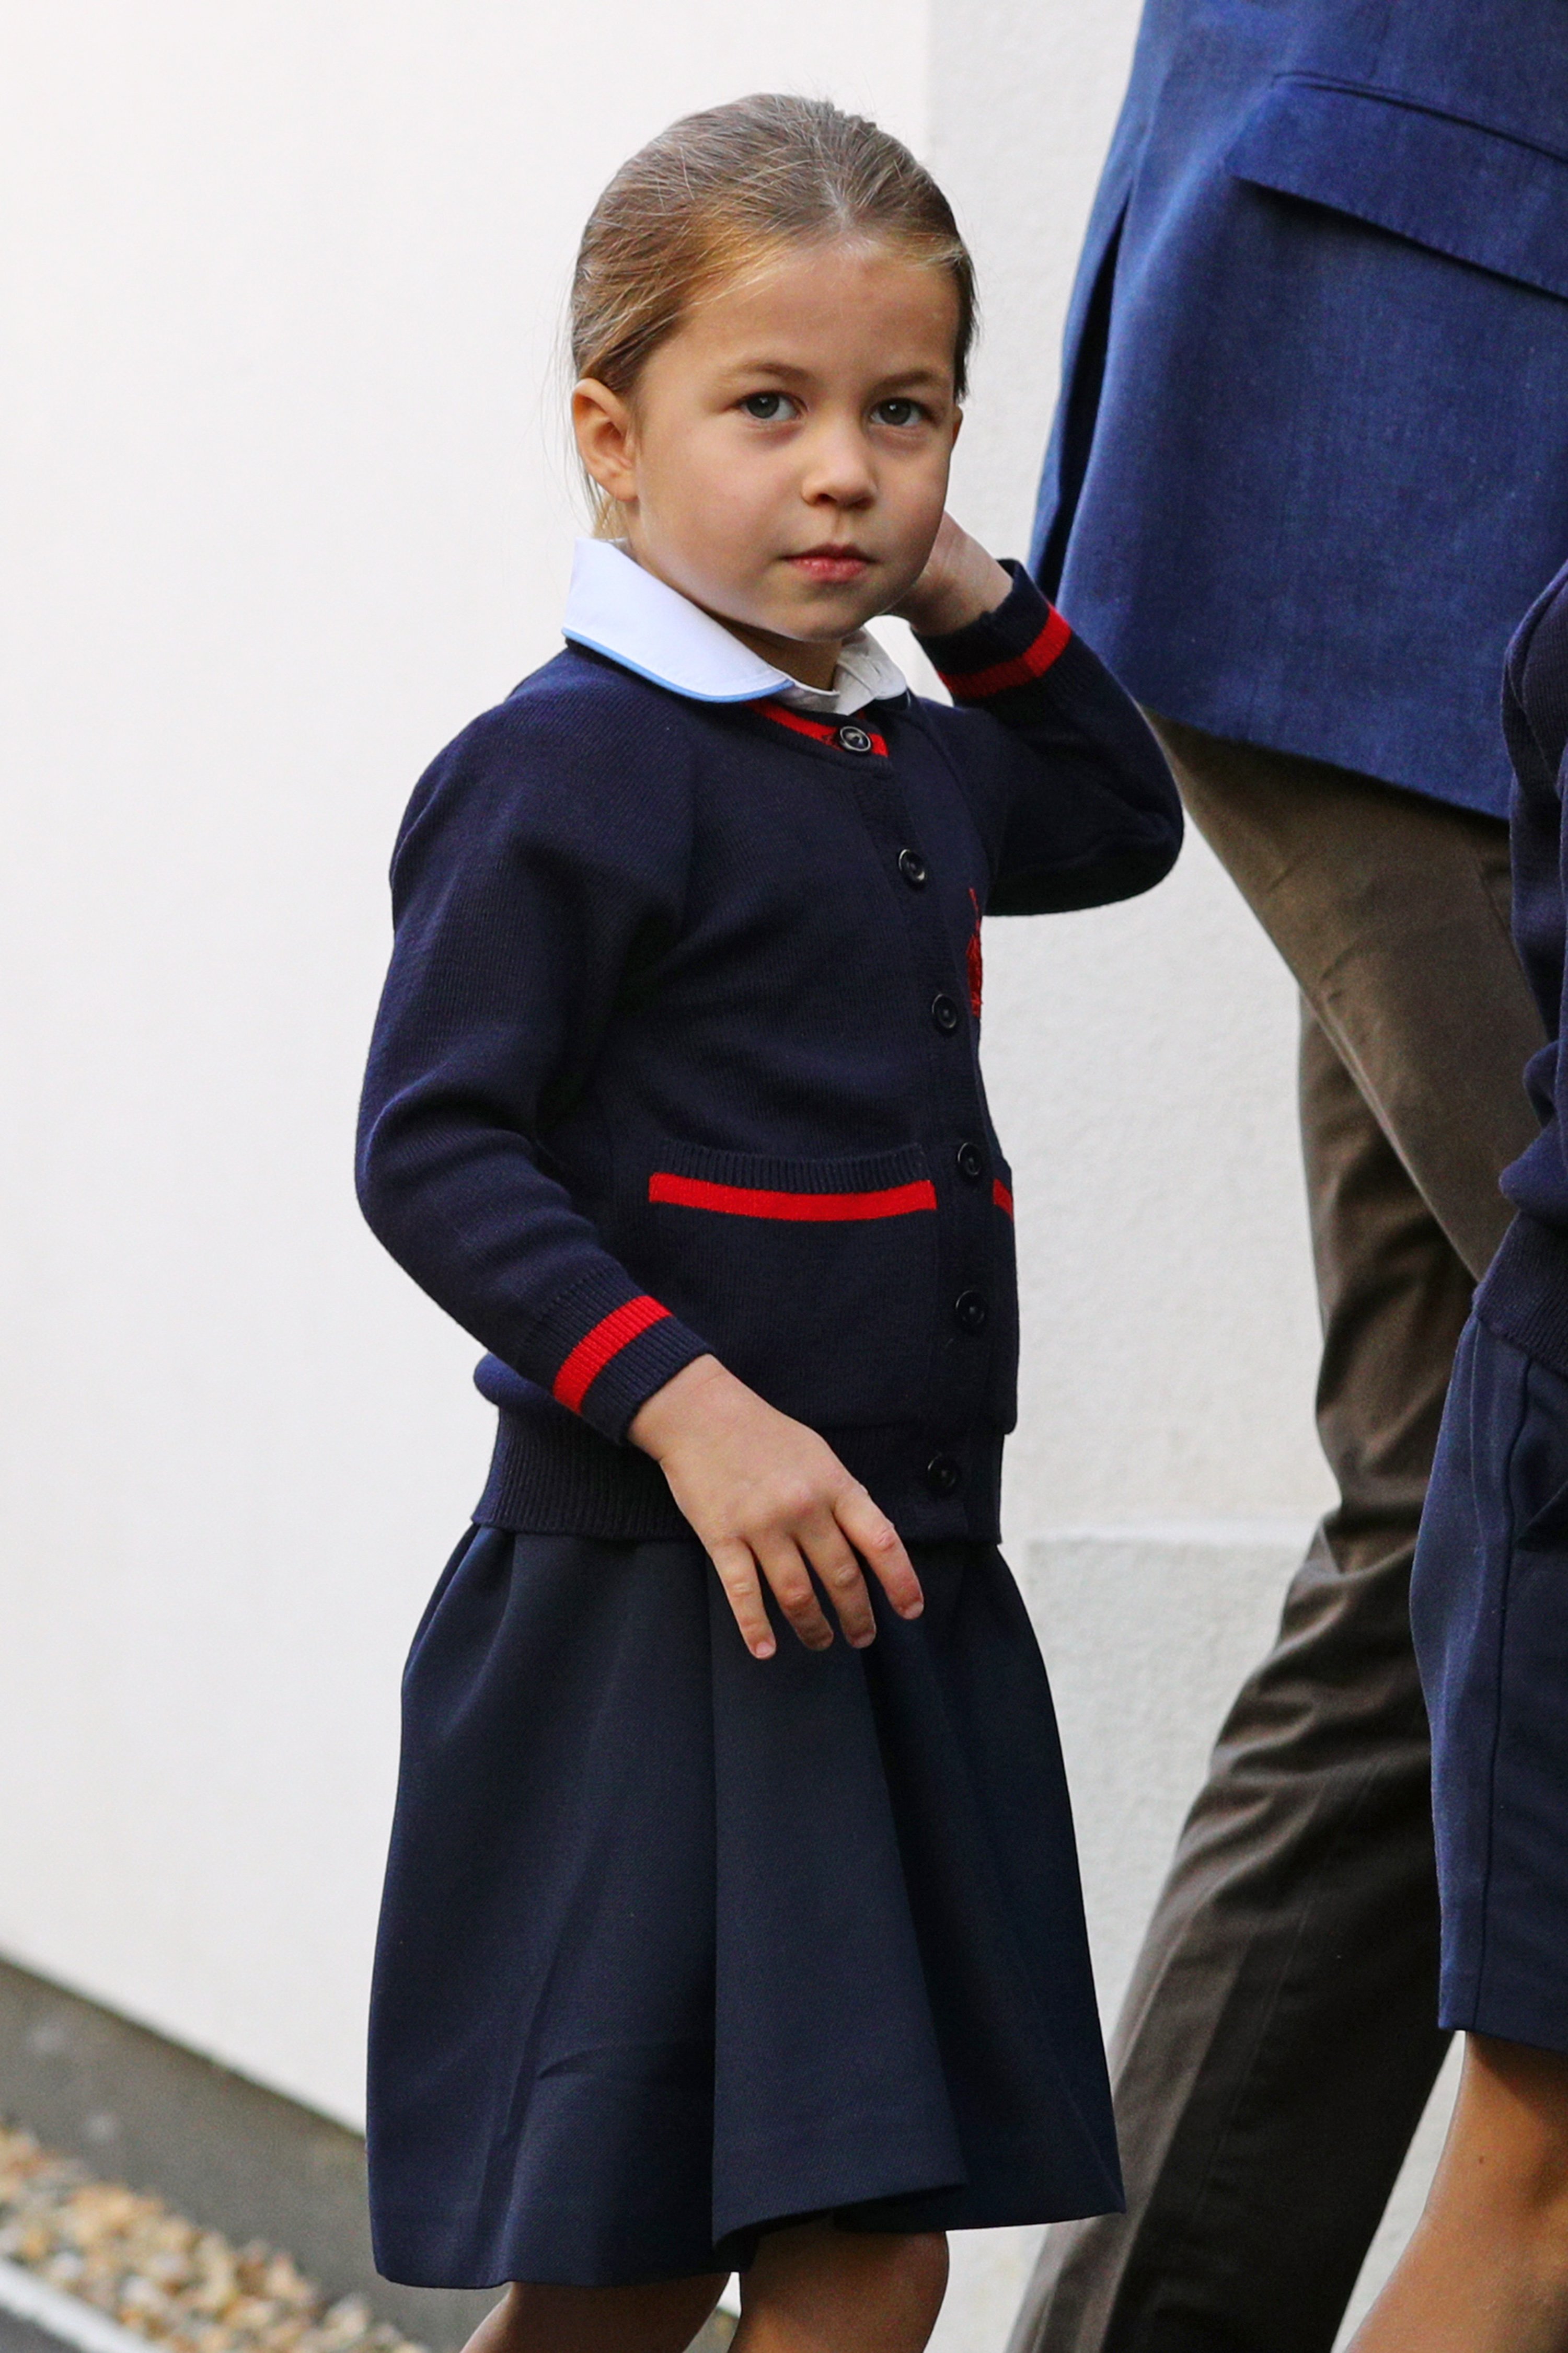 Prinzessin Charlotte bei der Ankunft zu ihrem ersten Schultag in Thomas's Battersea in London am 5. September 2019 in London, England. | Quelle: Getty Images